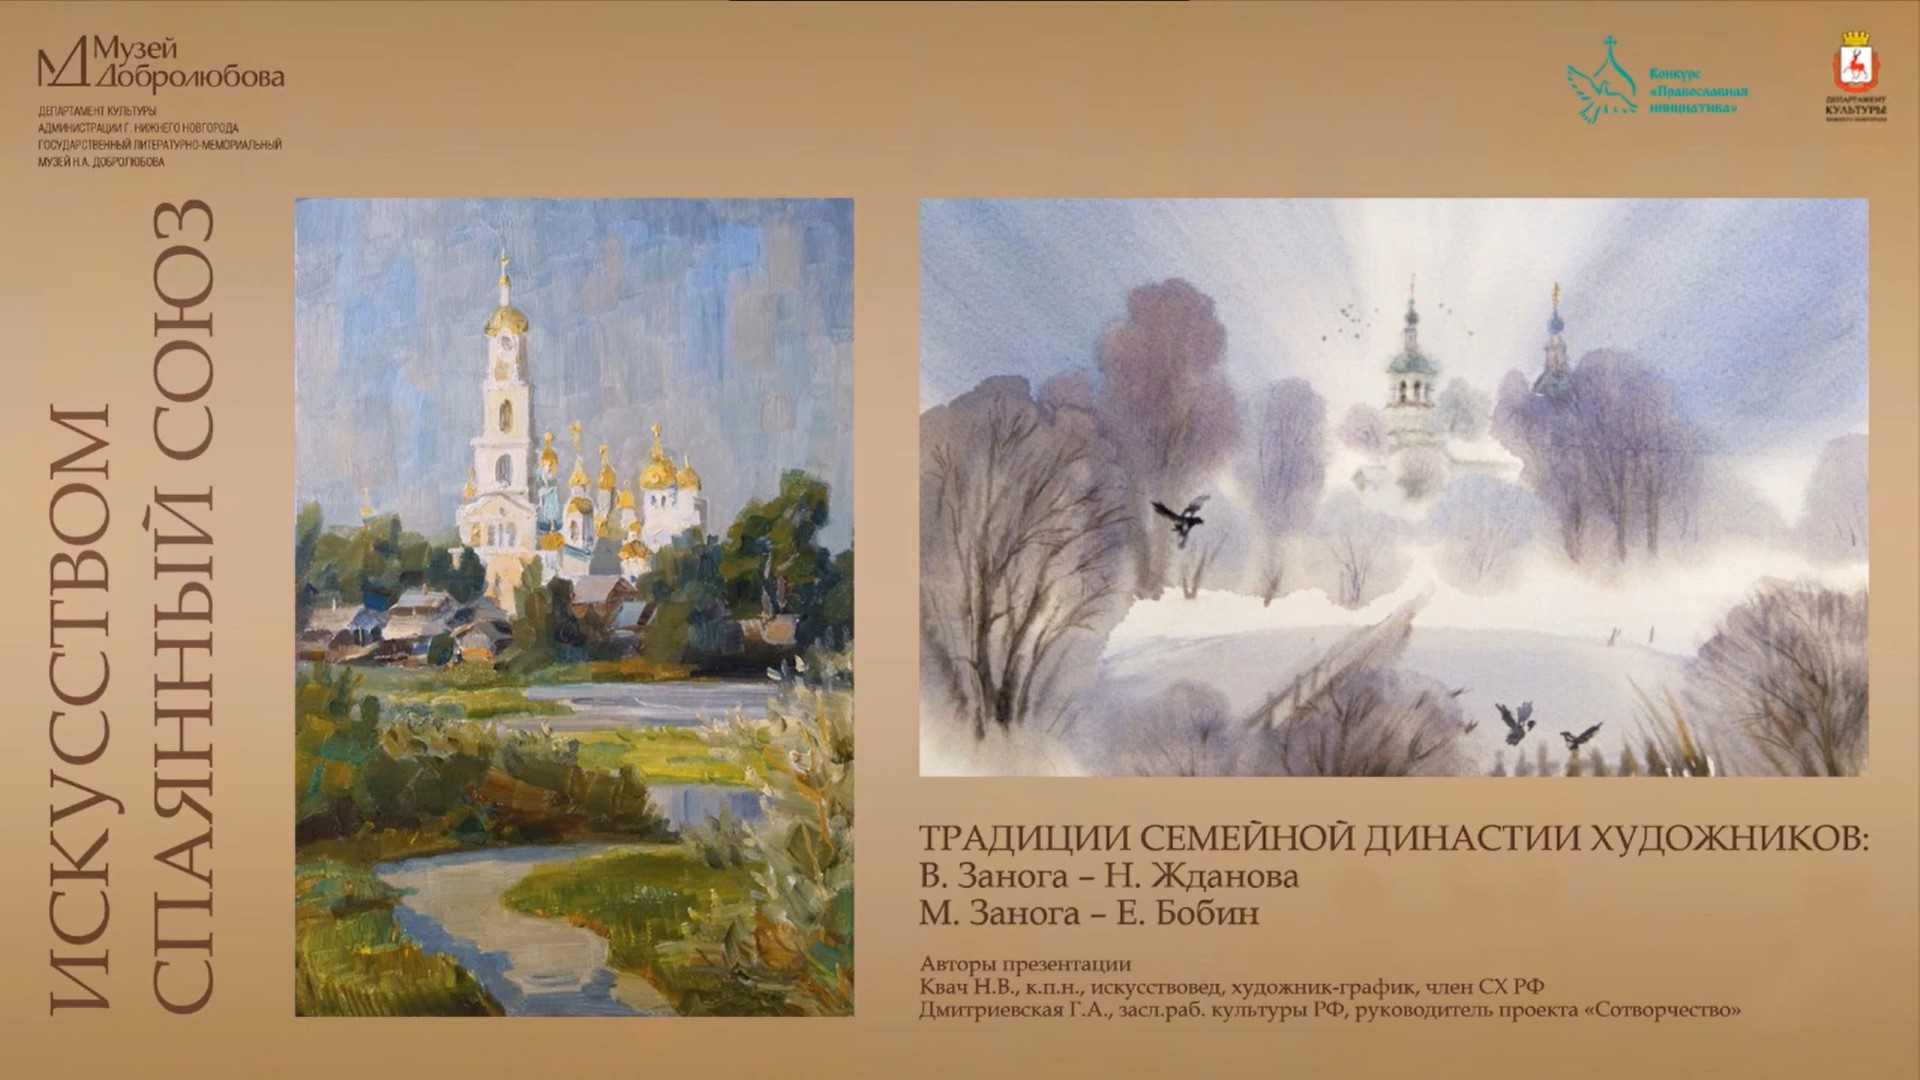 Нижегородский музей Добролюбова опубликовал видеорассказ «Искусством спаянный союз»